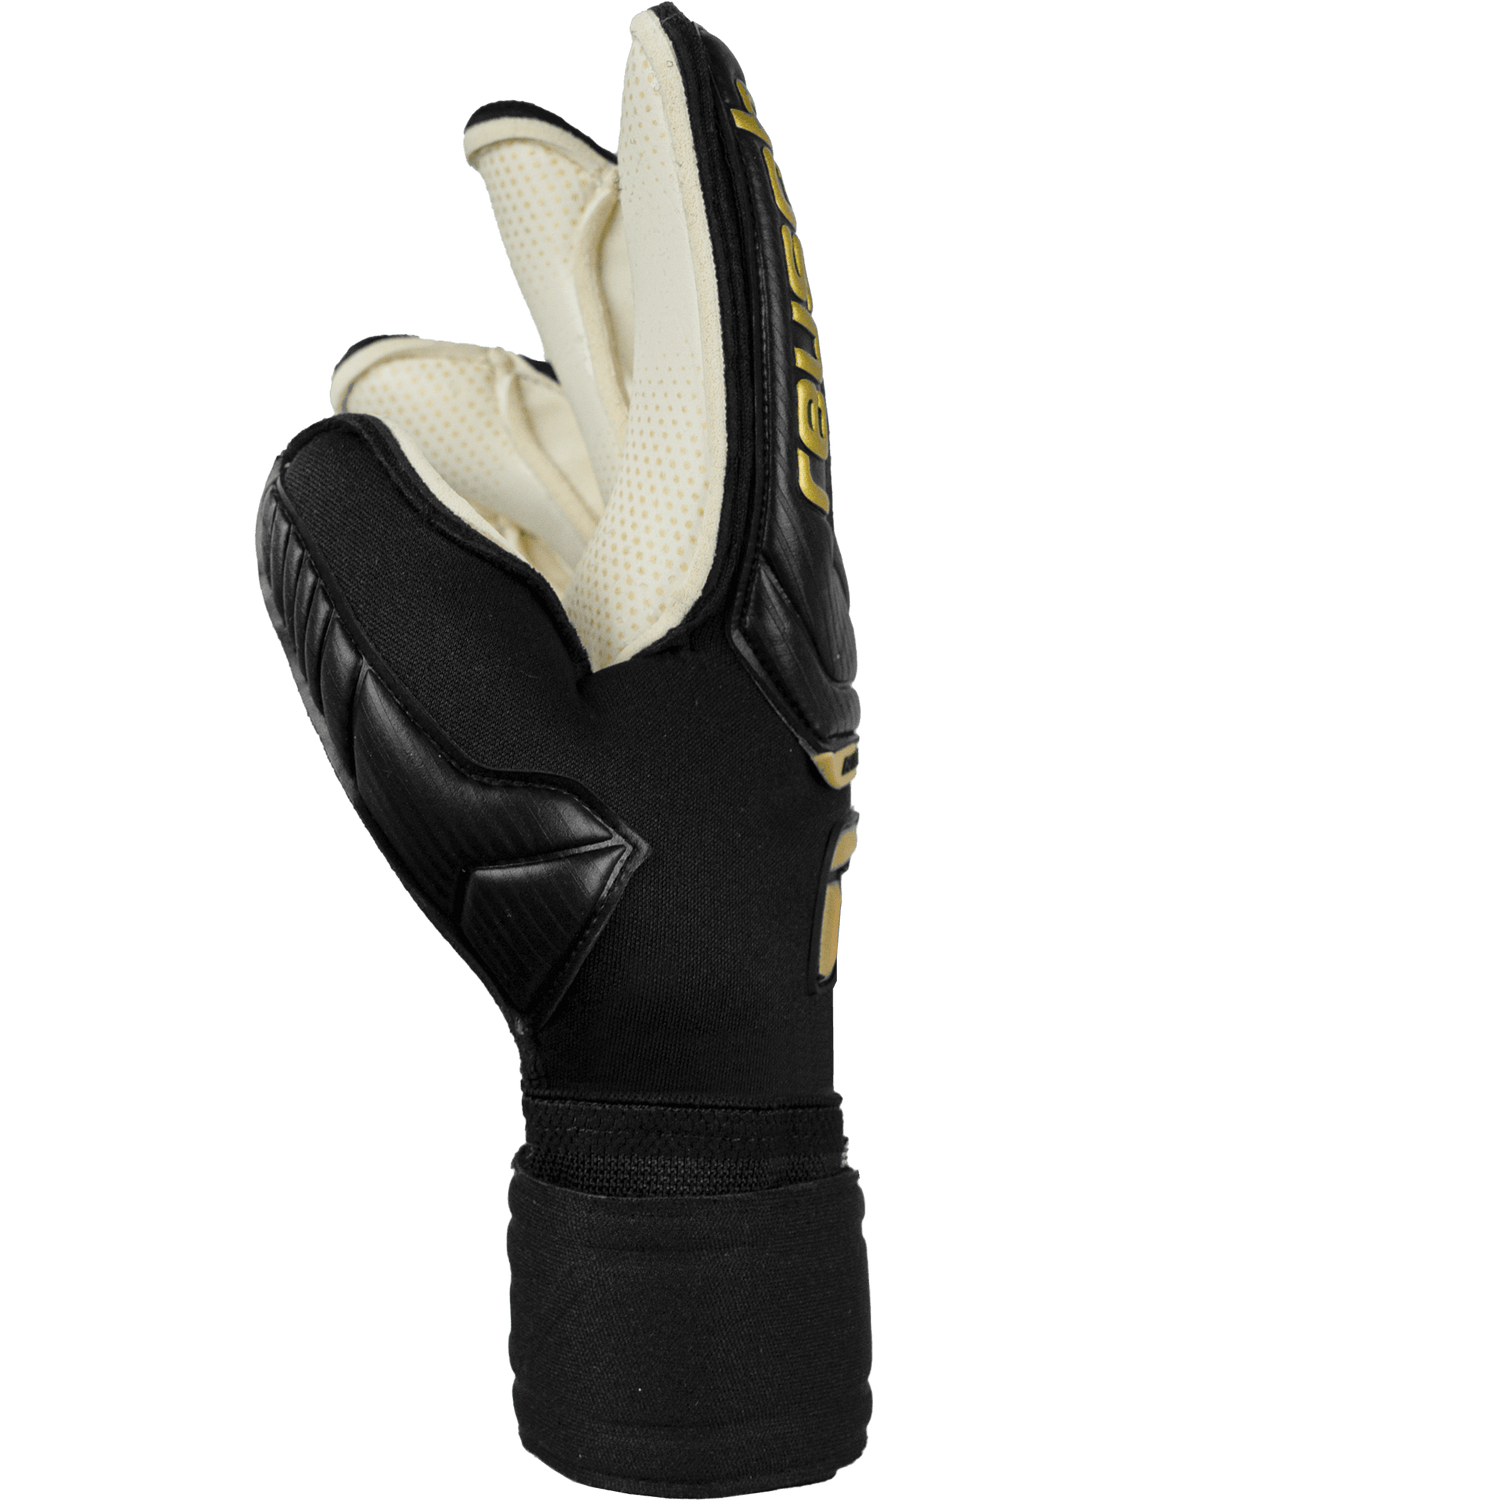 Reusch Attrakt Gold X Glueprint EC Goalkeeper Gloves - Black-Gold (Single - Side)